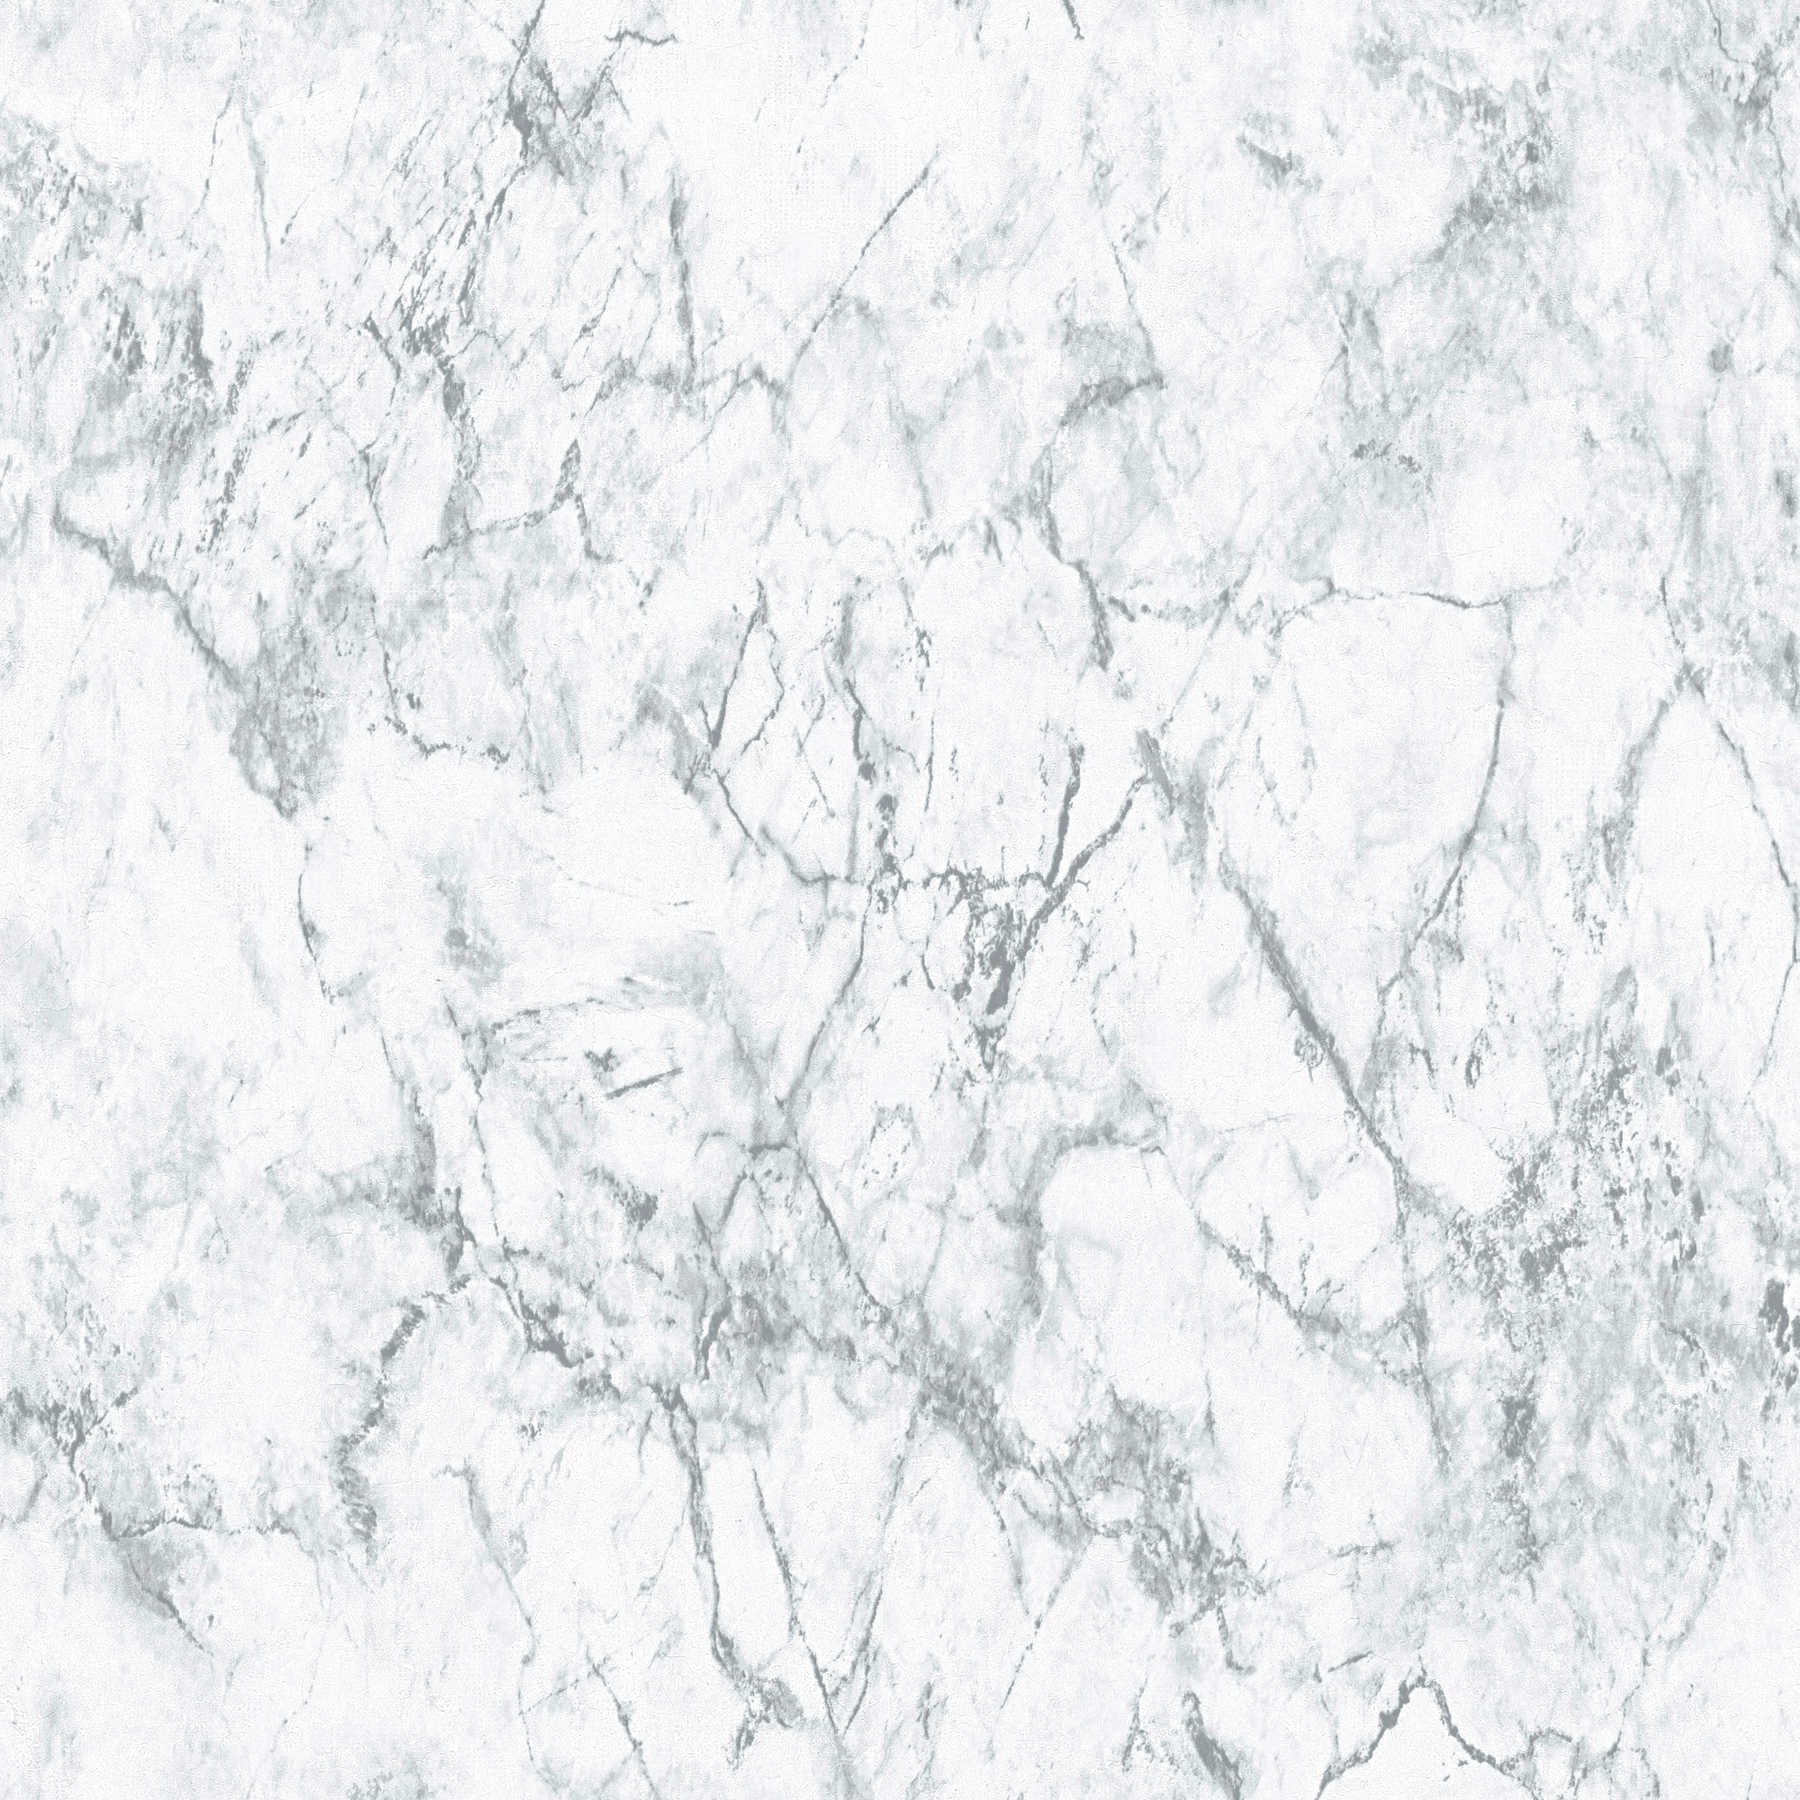             Carta da parati in marmo effetto pietra marmorizzata - grigio, bianco
        